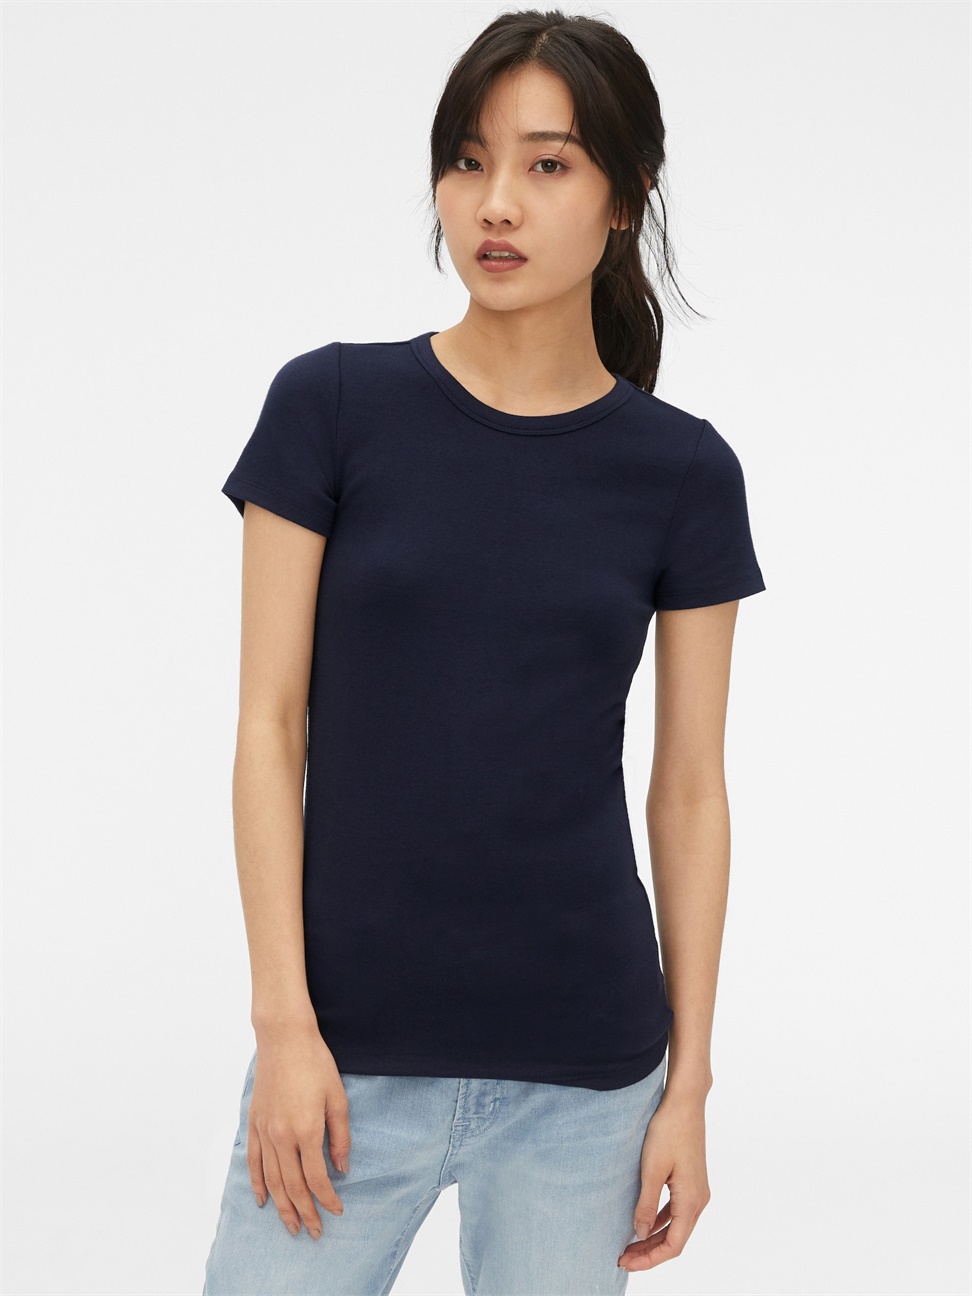 女裝|莫代爾圓領短袖T恤-純靛藍色